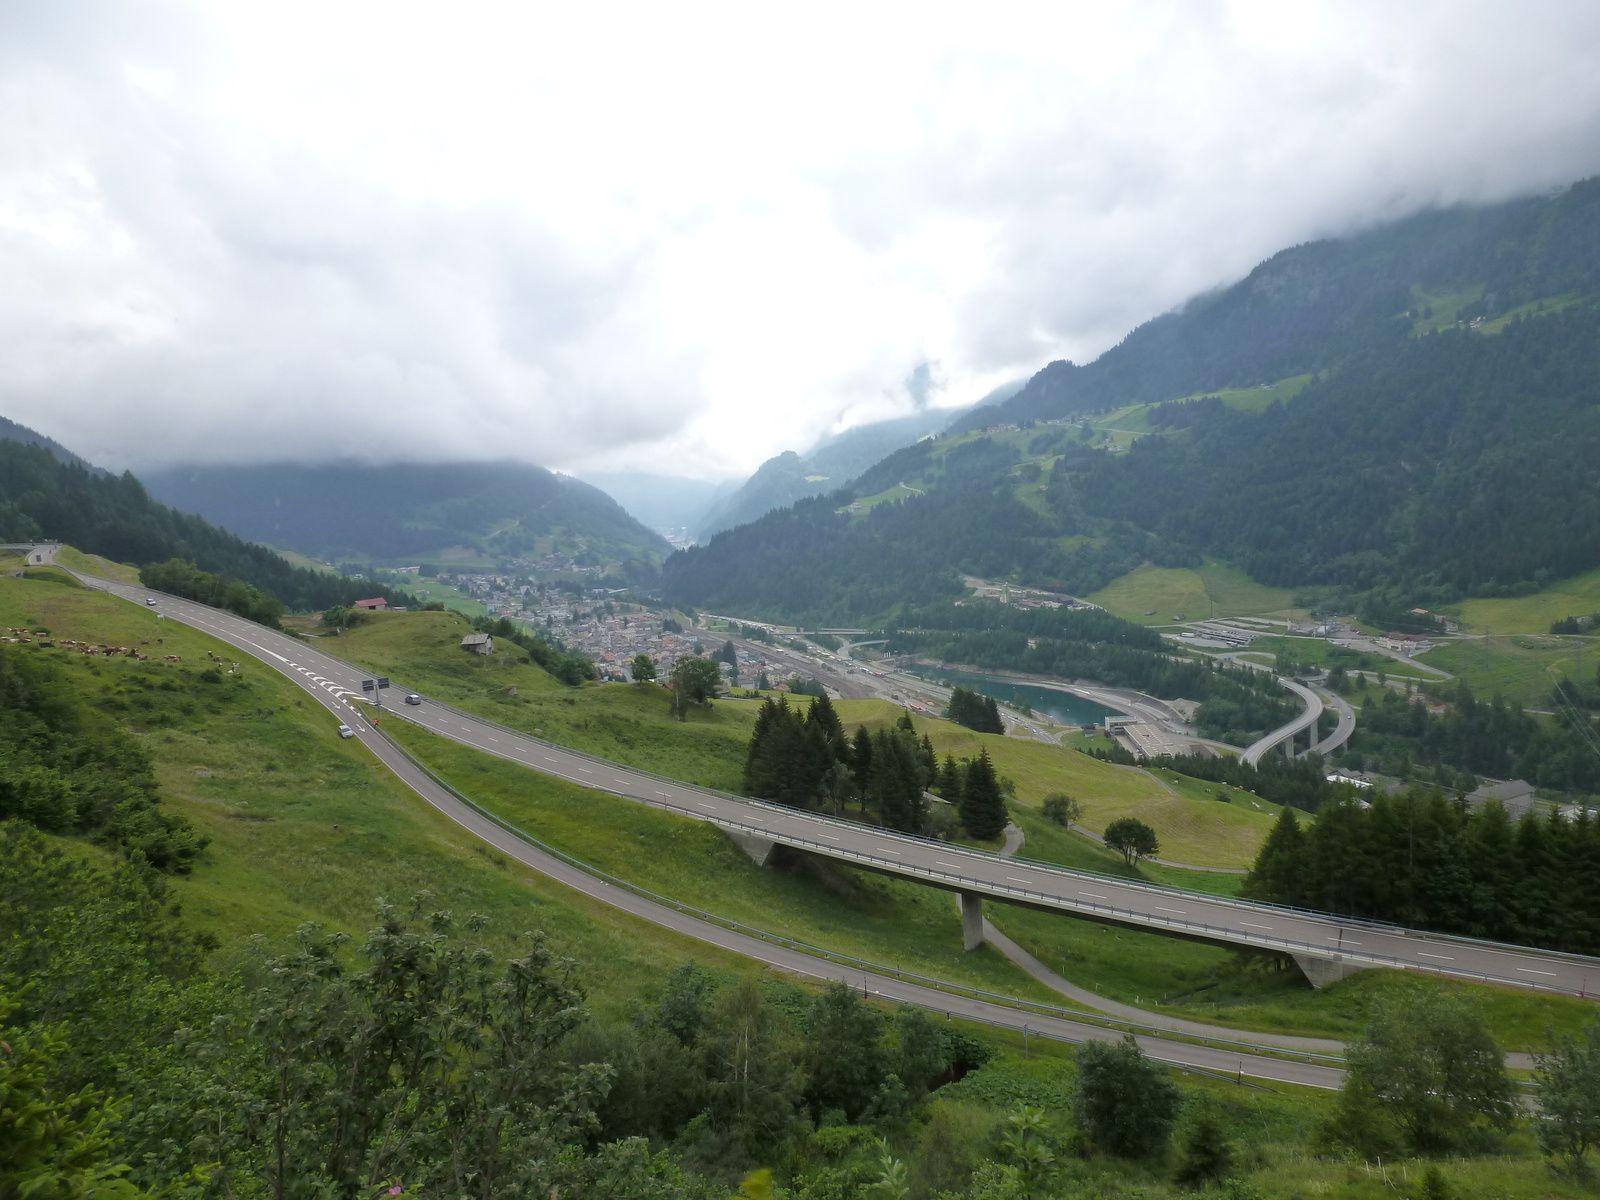 28 juin 2014 - Cols alpins suisses, un paradis &amp; un enfer